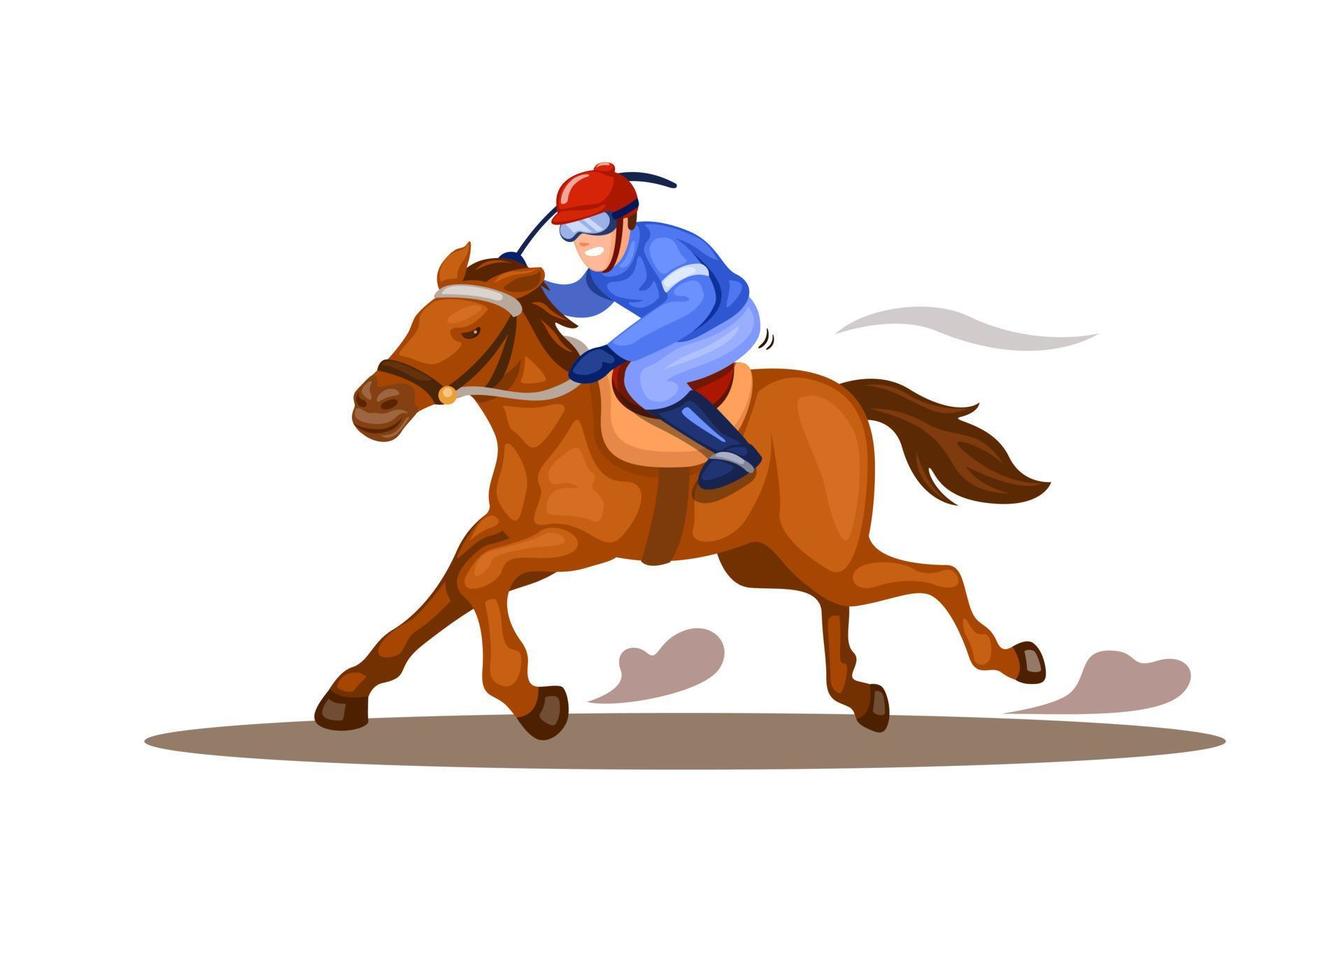 jockey ridhäst i hästkapplöpning konkurrens sport illustration vektor